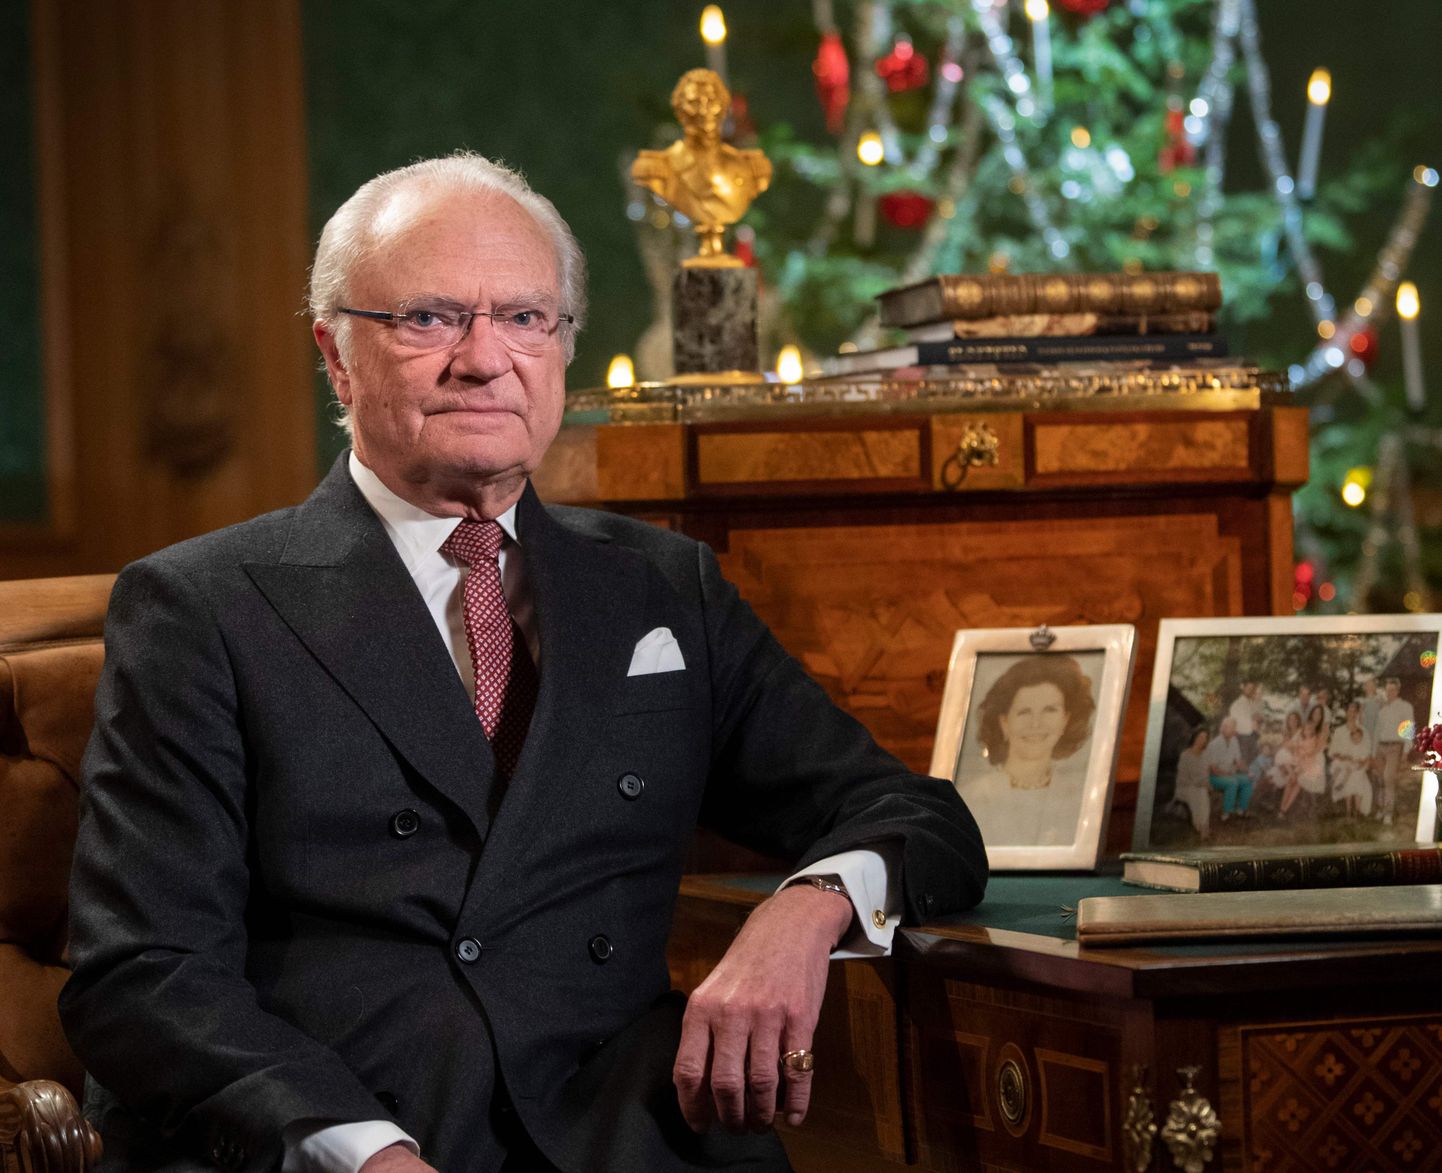 Rootsi kuningas Carl XVI Gustaf poseerimas 2019. aasta jõulude ajal Stockholmis kuningalossis